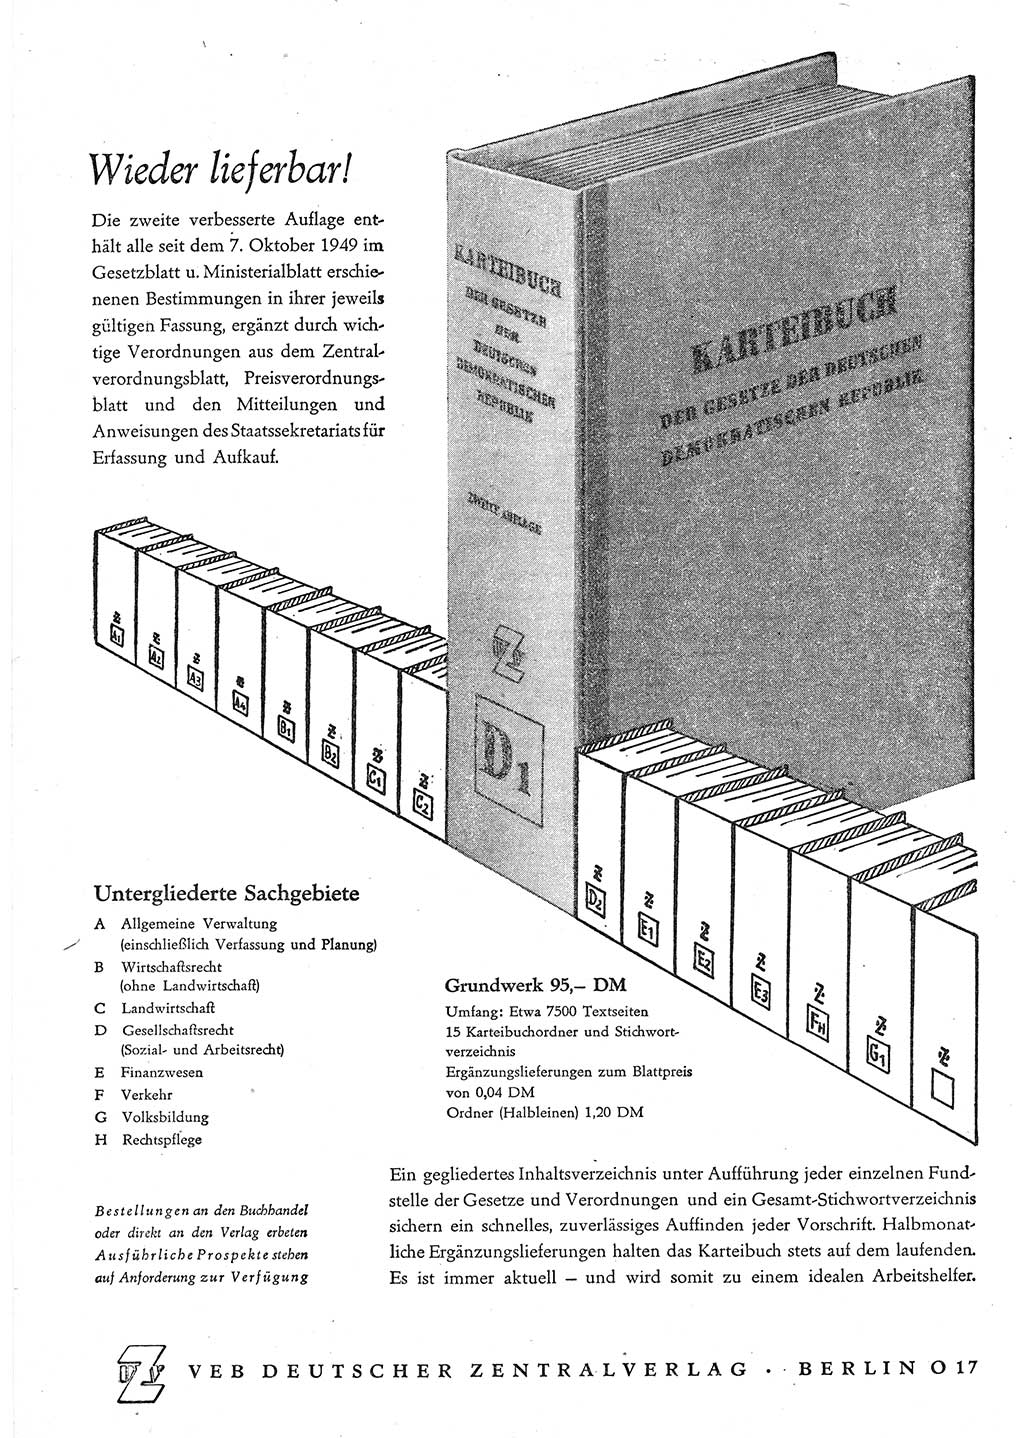 Gesetzblatt (GBl.) der Deutschen Demokratischen Republik (DDR) 1952, Seite 1228 (GBl. DDR 1952, S. 1228)